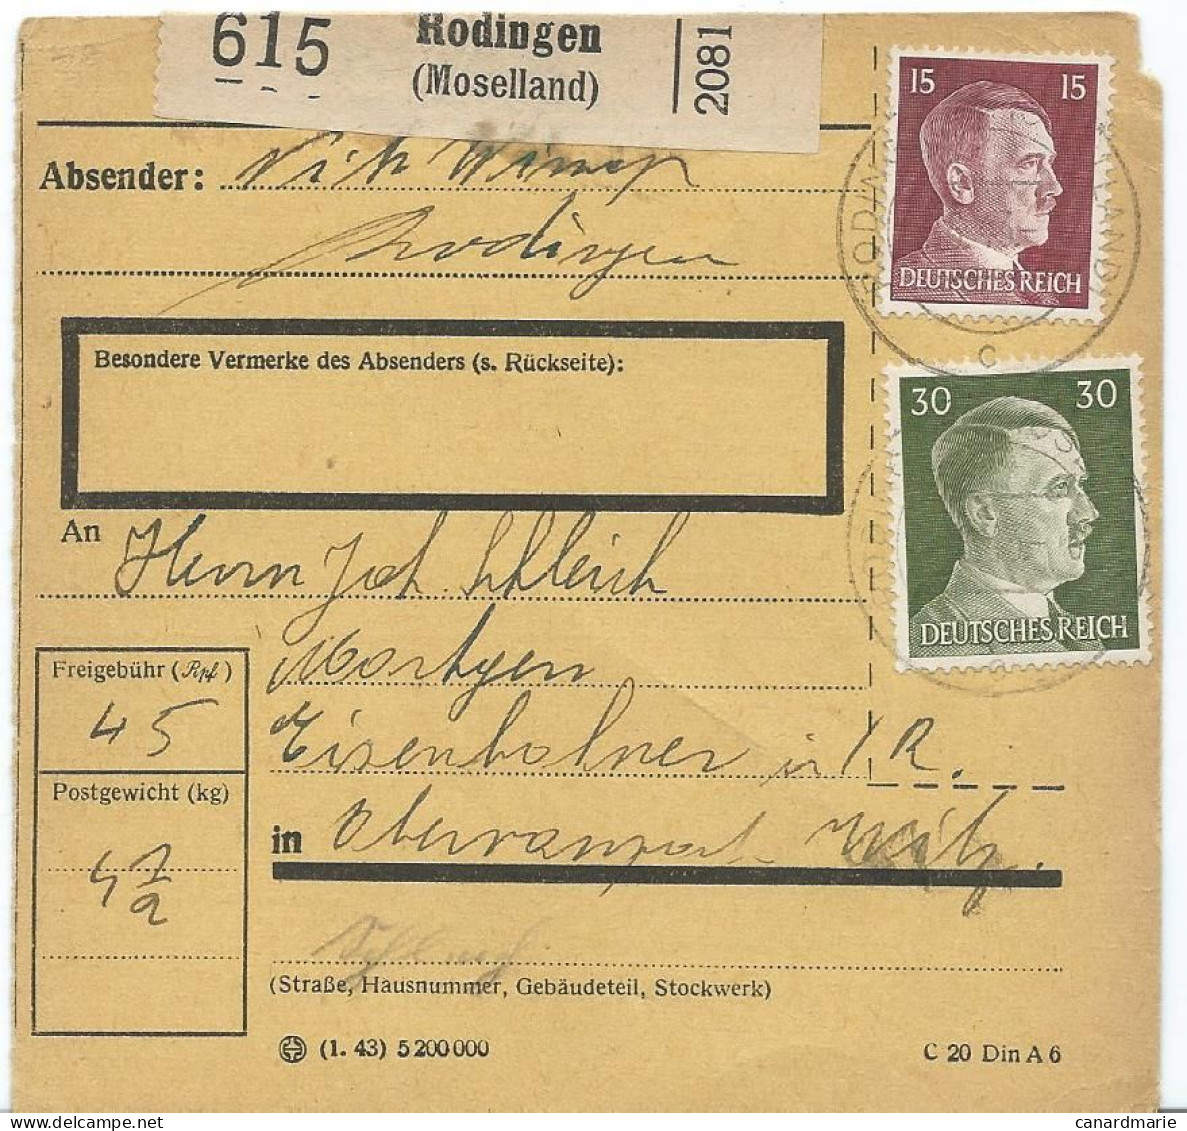 BULLETIN DE COLIS POSTAL 1943 AVEC ETIQUETTE DE RODINGEN (MOSELLAND) - 1940-1944 Deutsche Besatzung